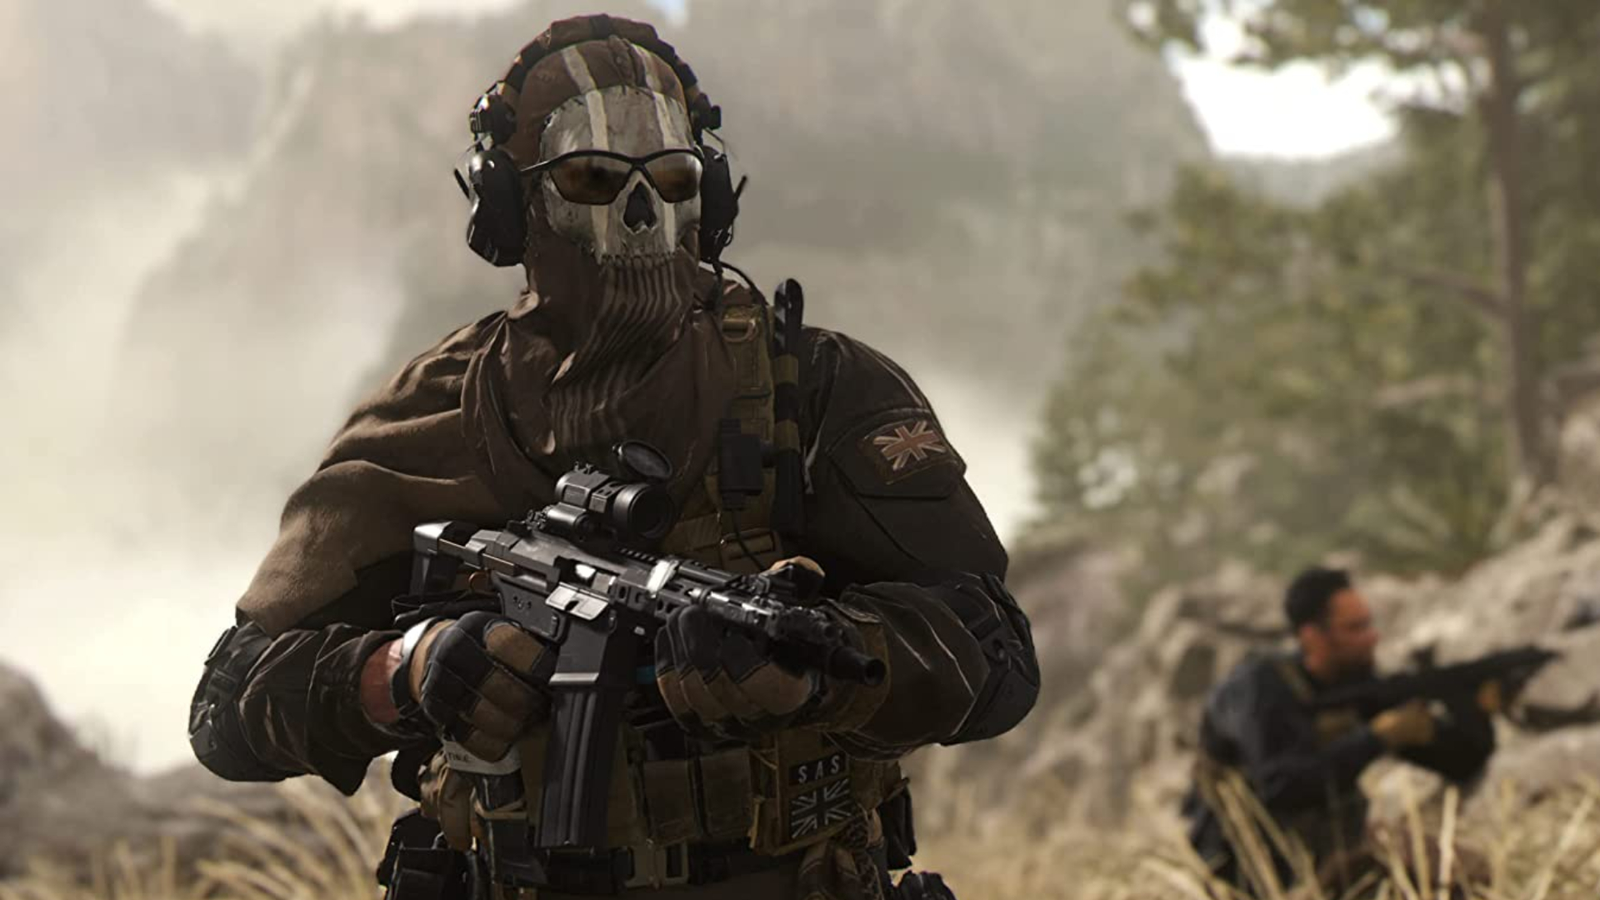 Call of Duty Modern Warfare 2 PS5 Price Comparison